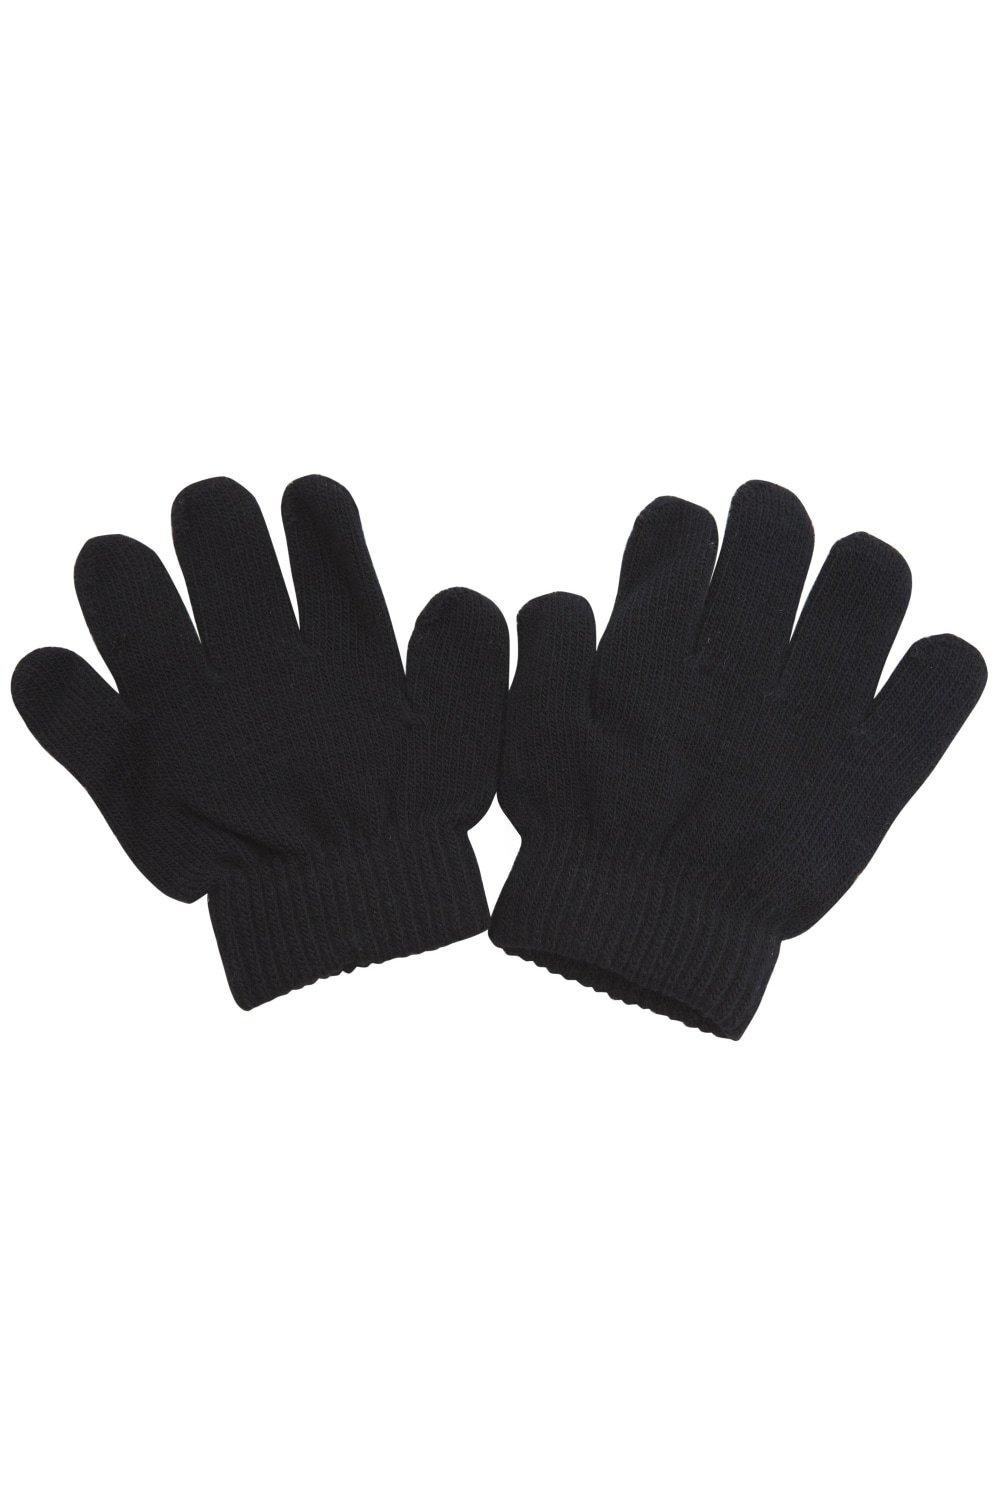 Зимние волшебные перчатки Universal Textiles, черный распродажа термовязаные зимние перчатки universal textiles черный